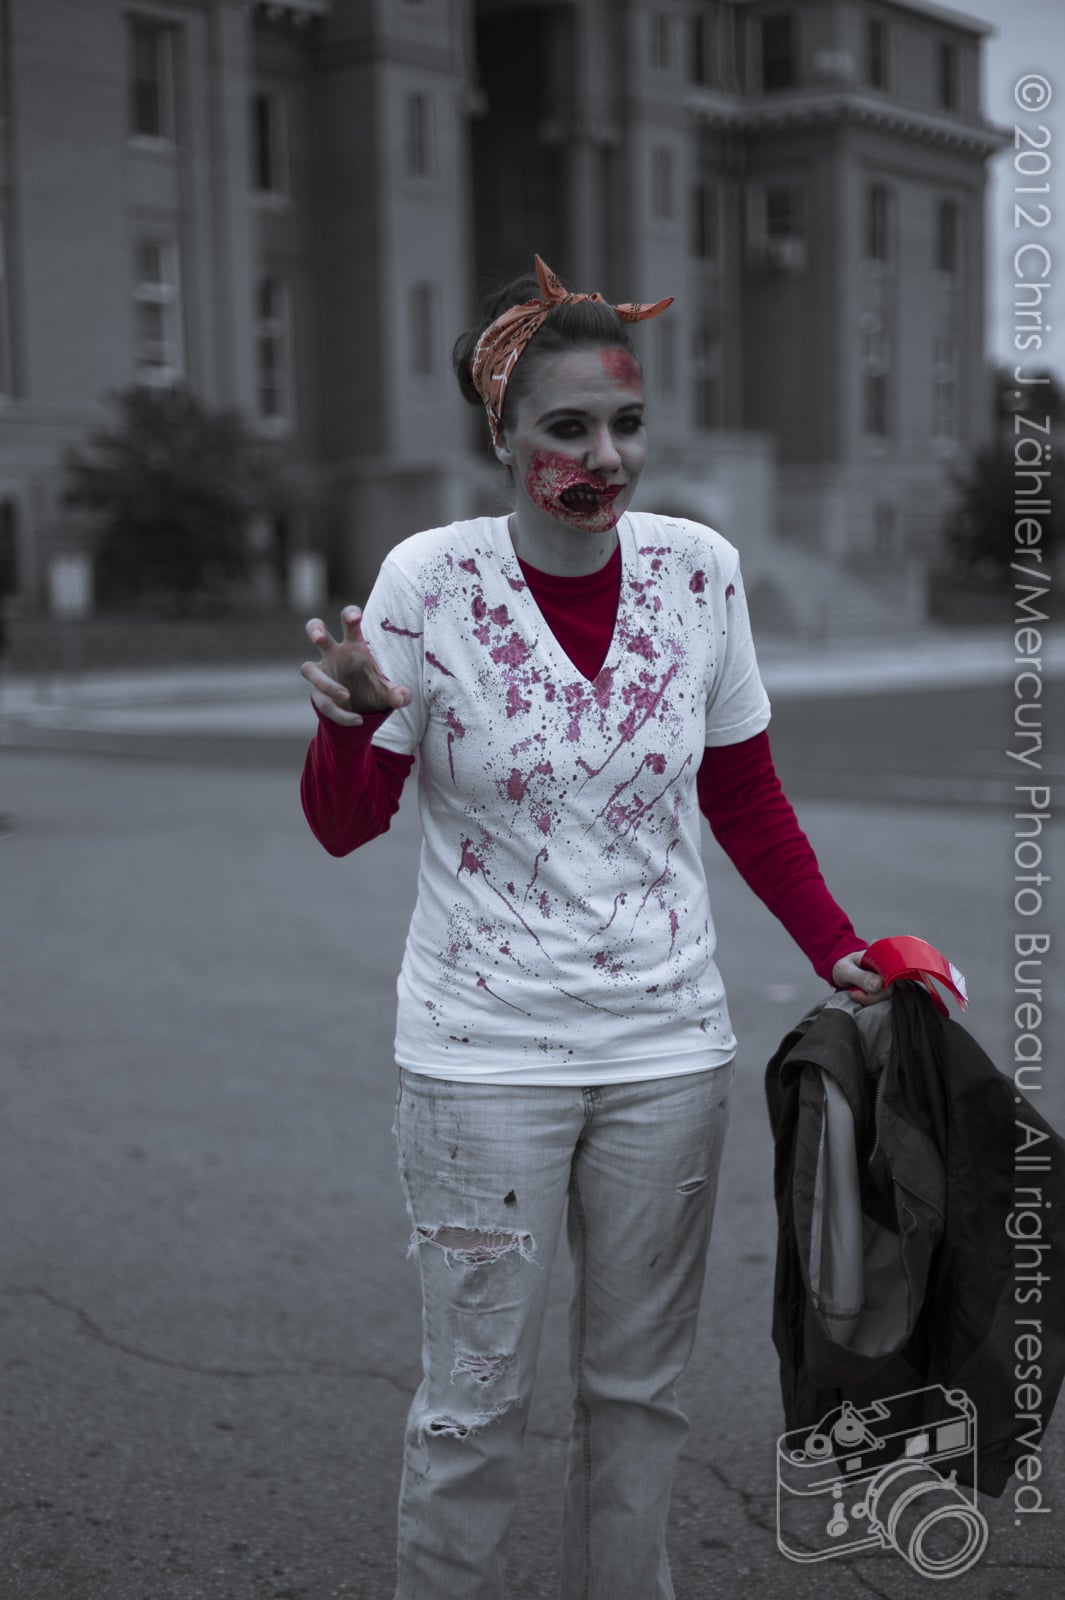 Zombie with Orange Bandana — Oklahoma’s Premier Zombie Race: Zombie Bolt 5K, Guthrie, Oklahoma